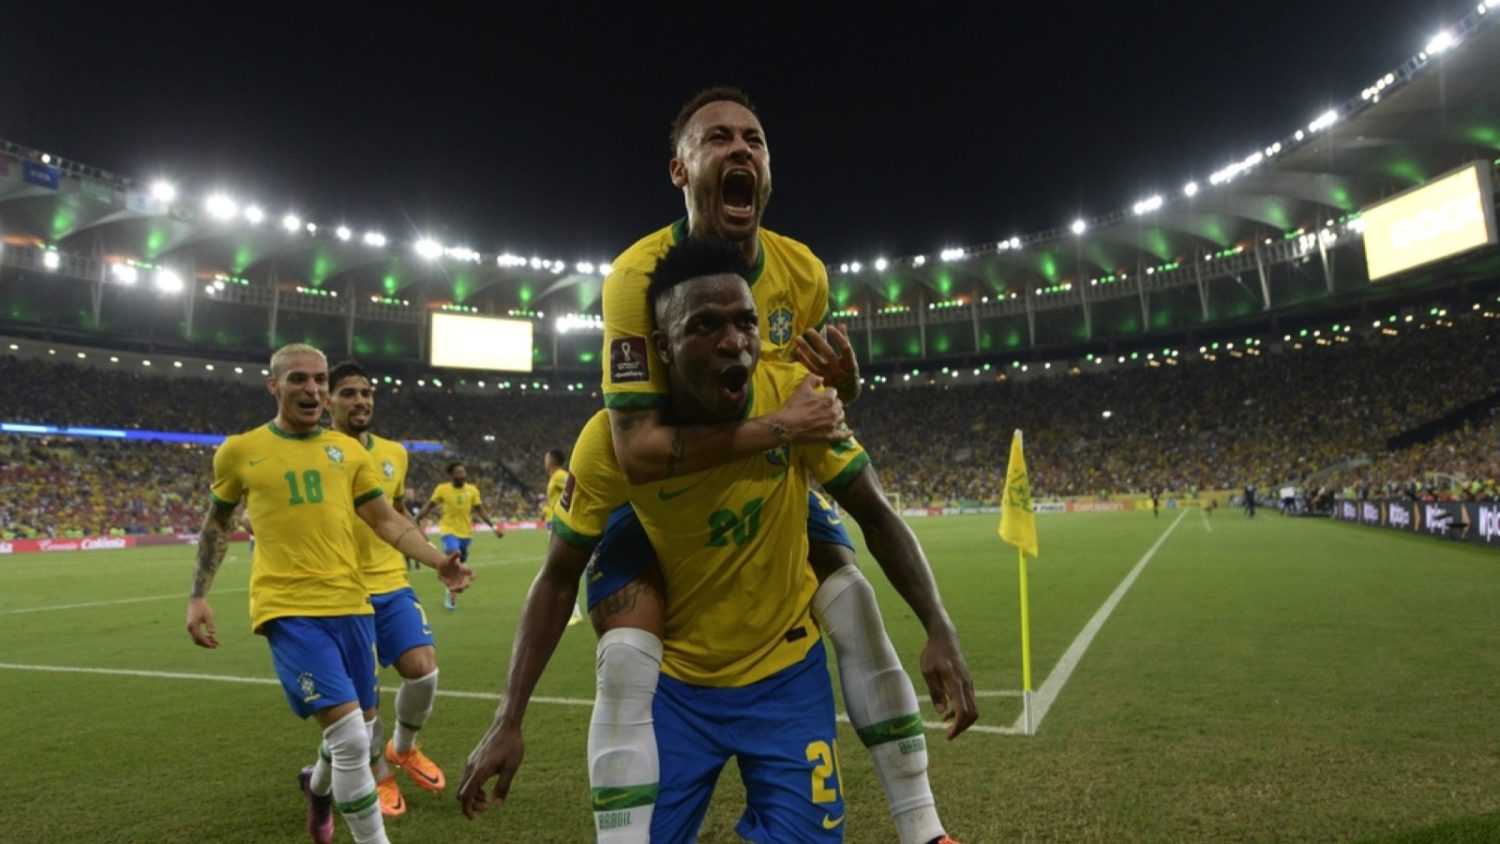 Rio de Janeiro Brazil team